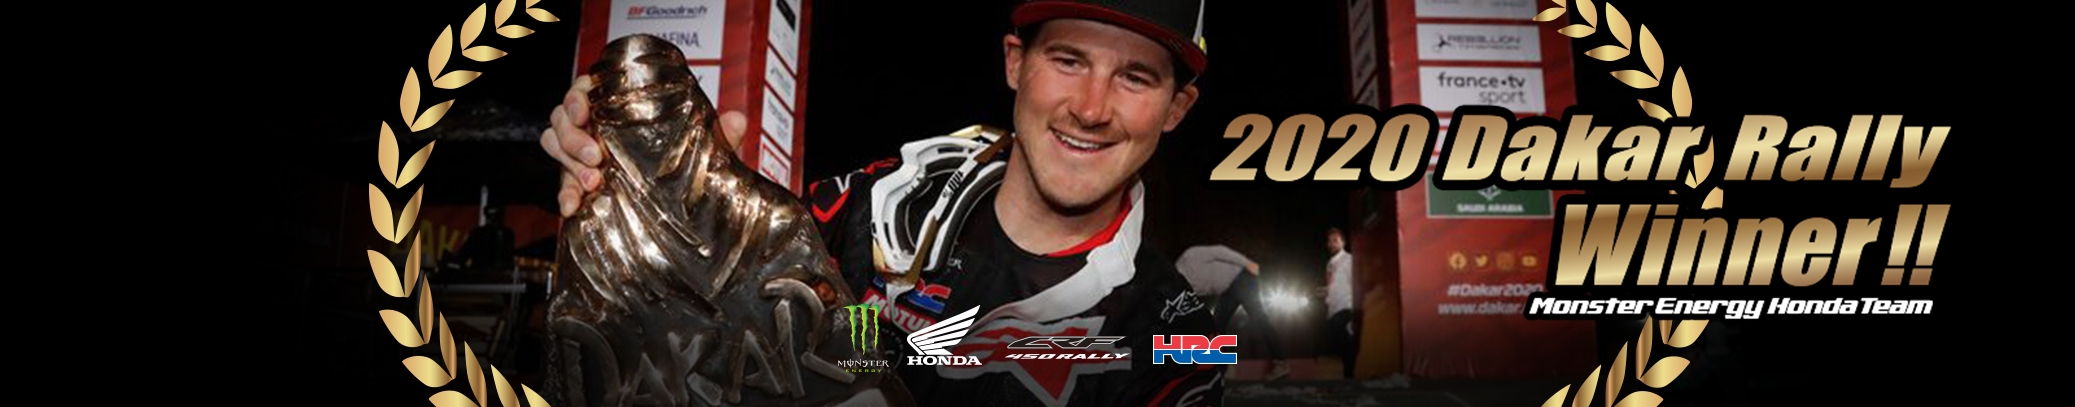 Honda Team & Monster Energy win the 2020 Dakar Rally